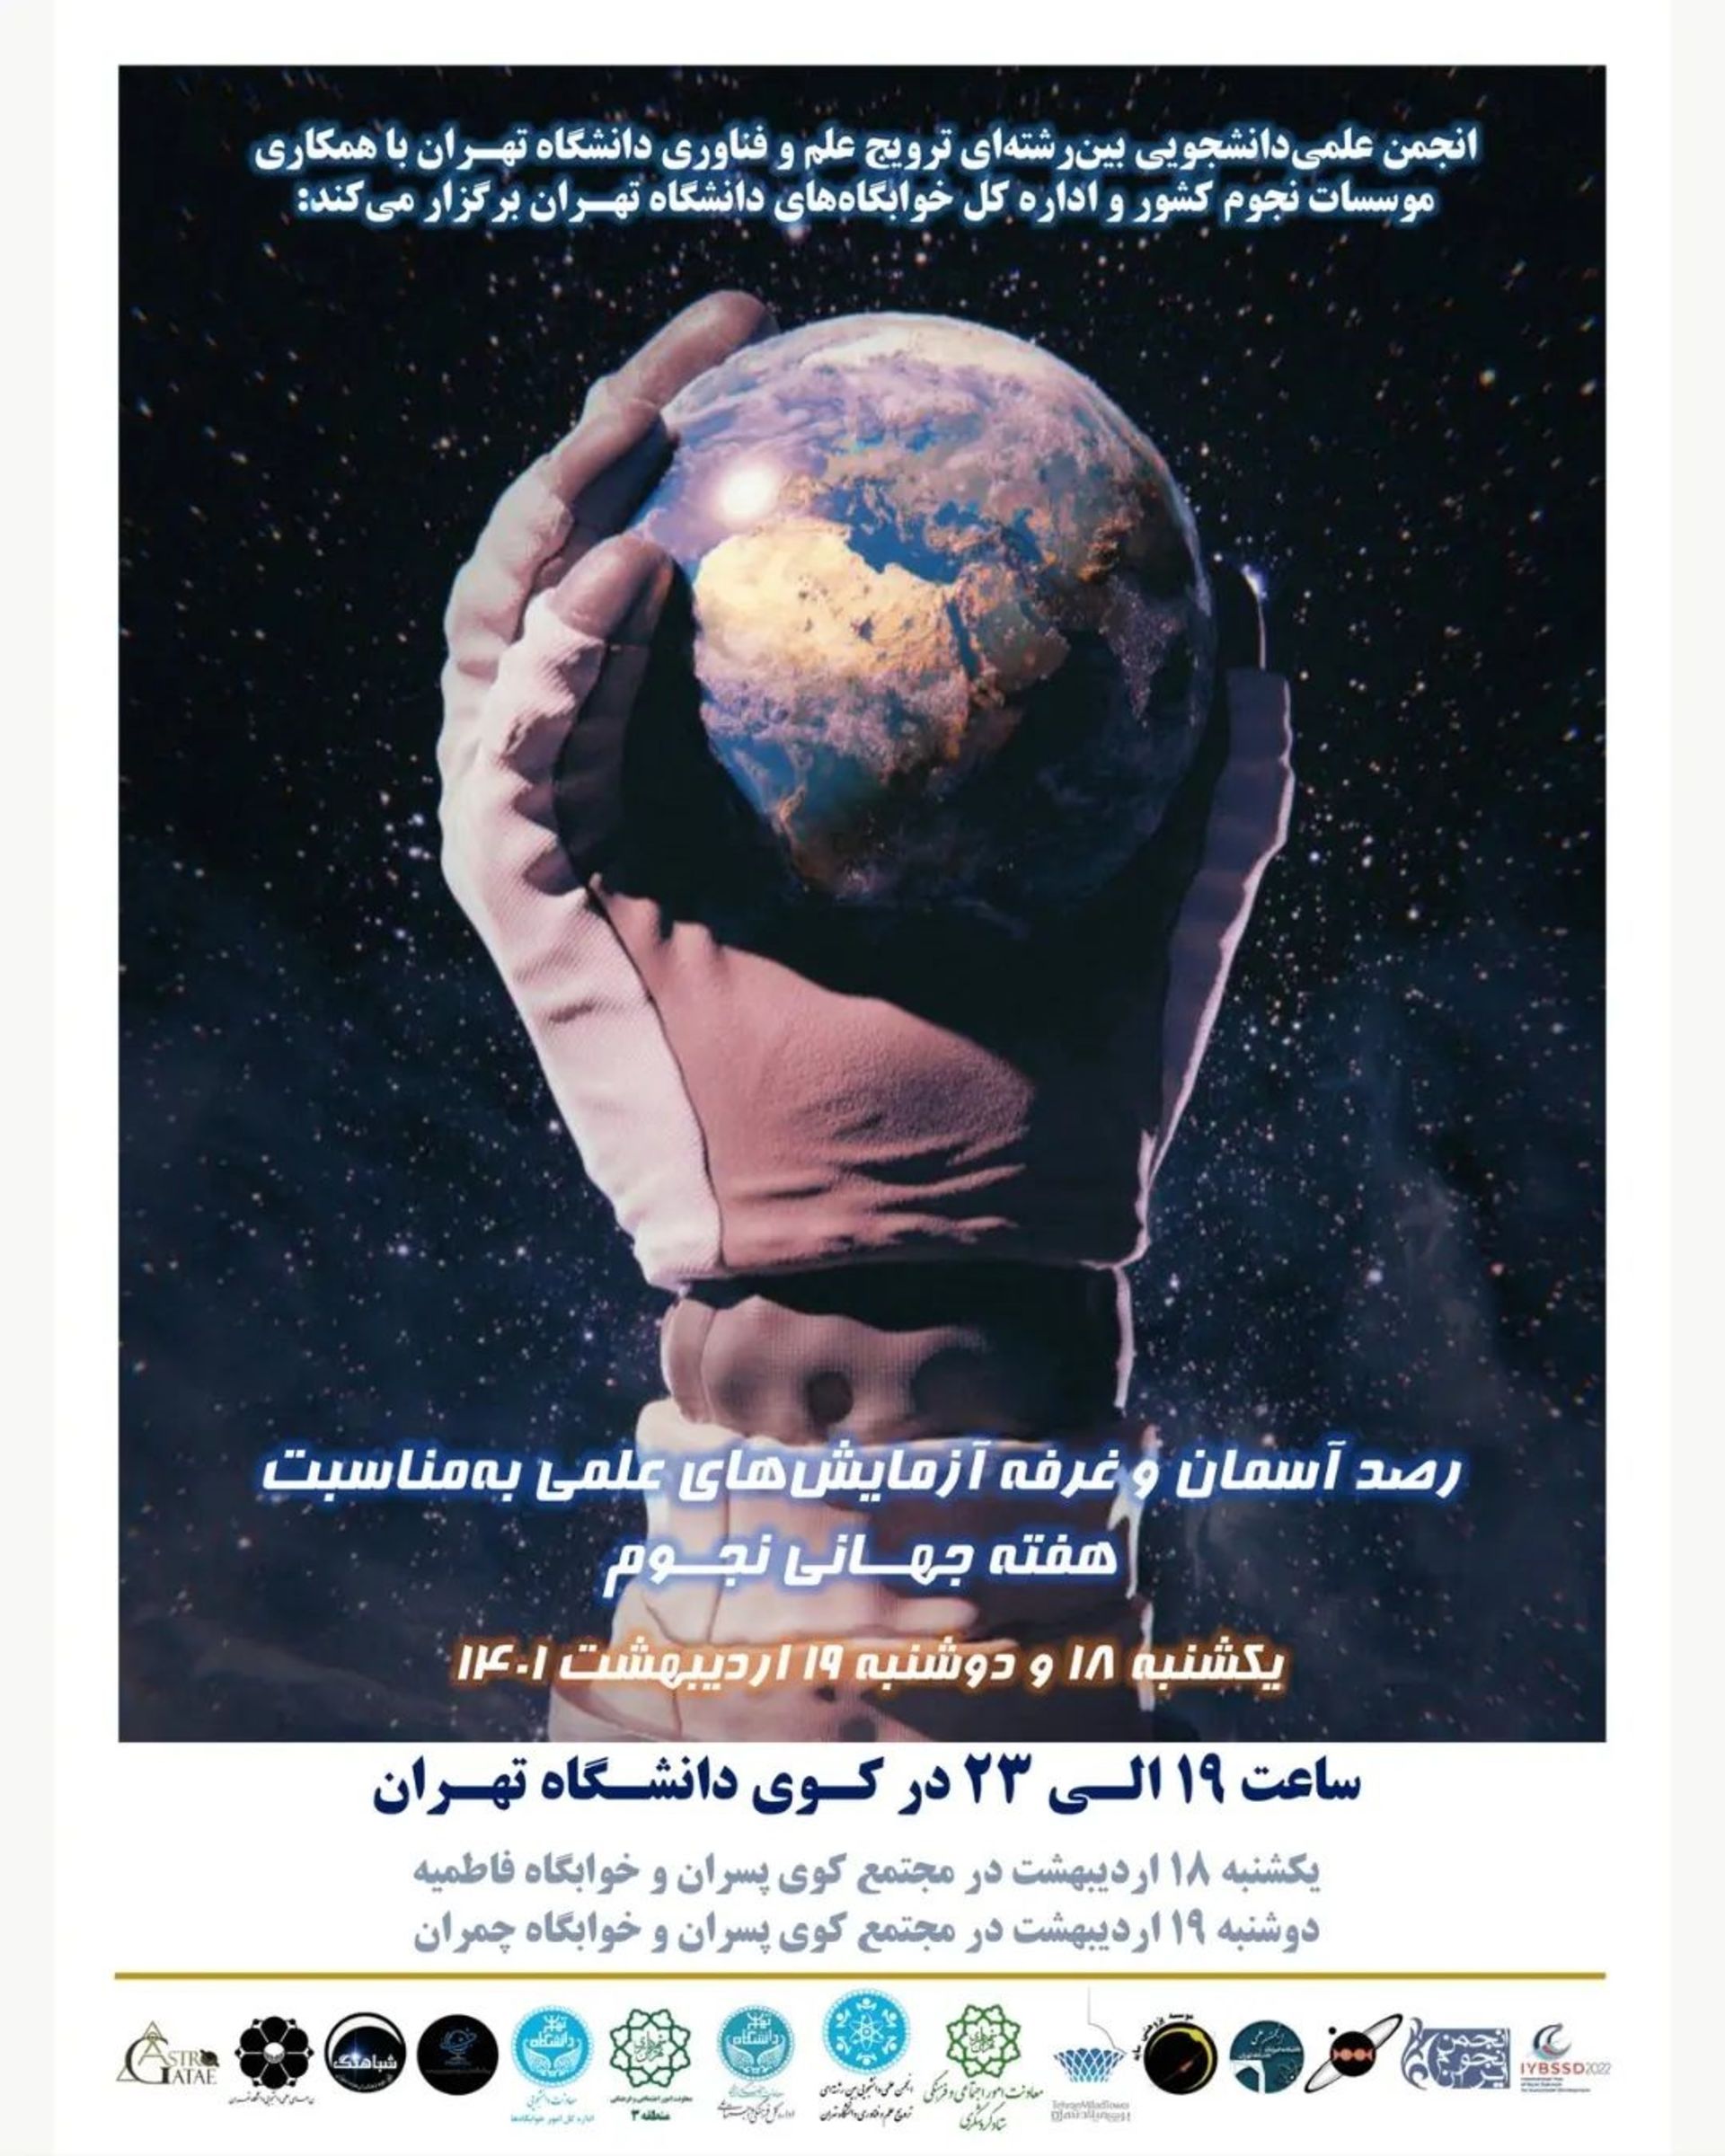 پوستر های انجمن دانشگاه تهران